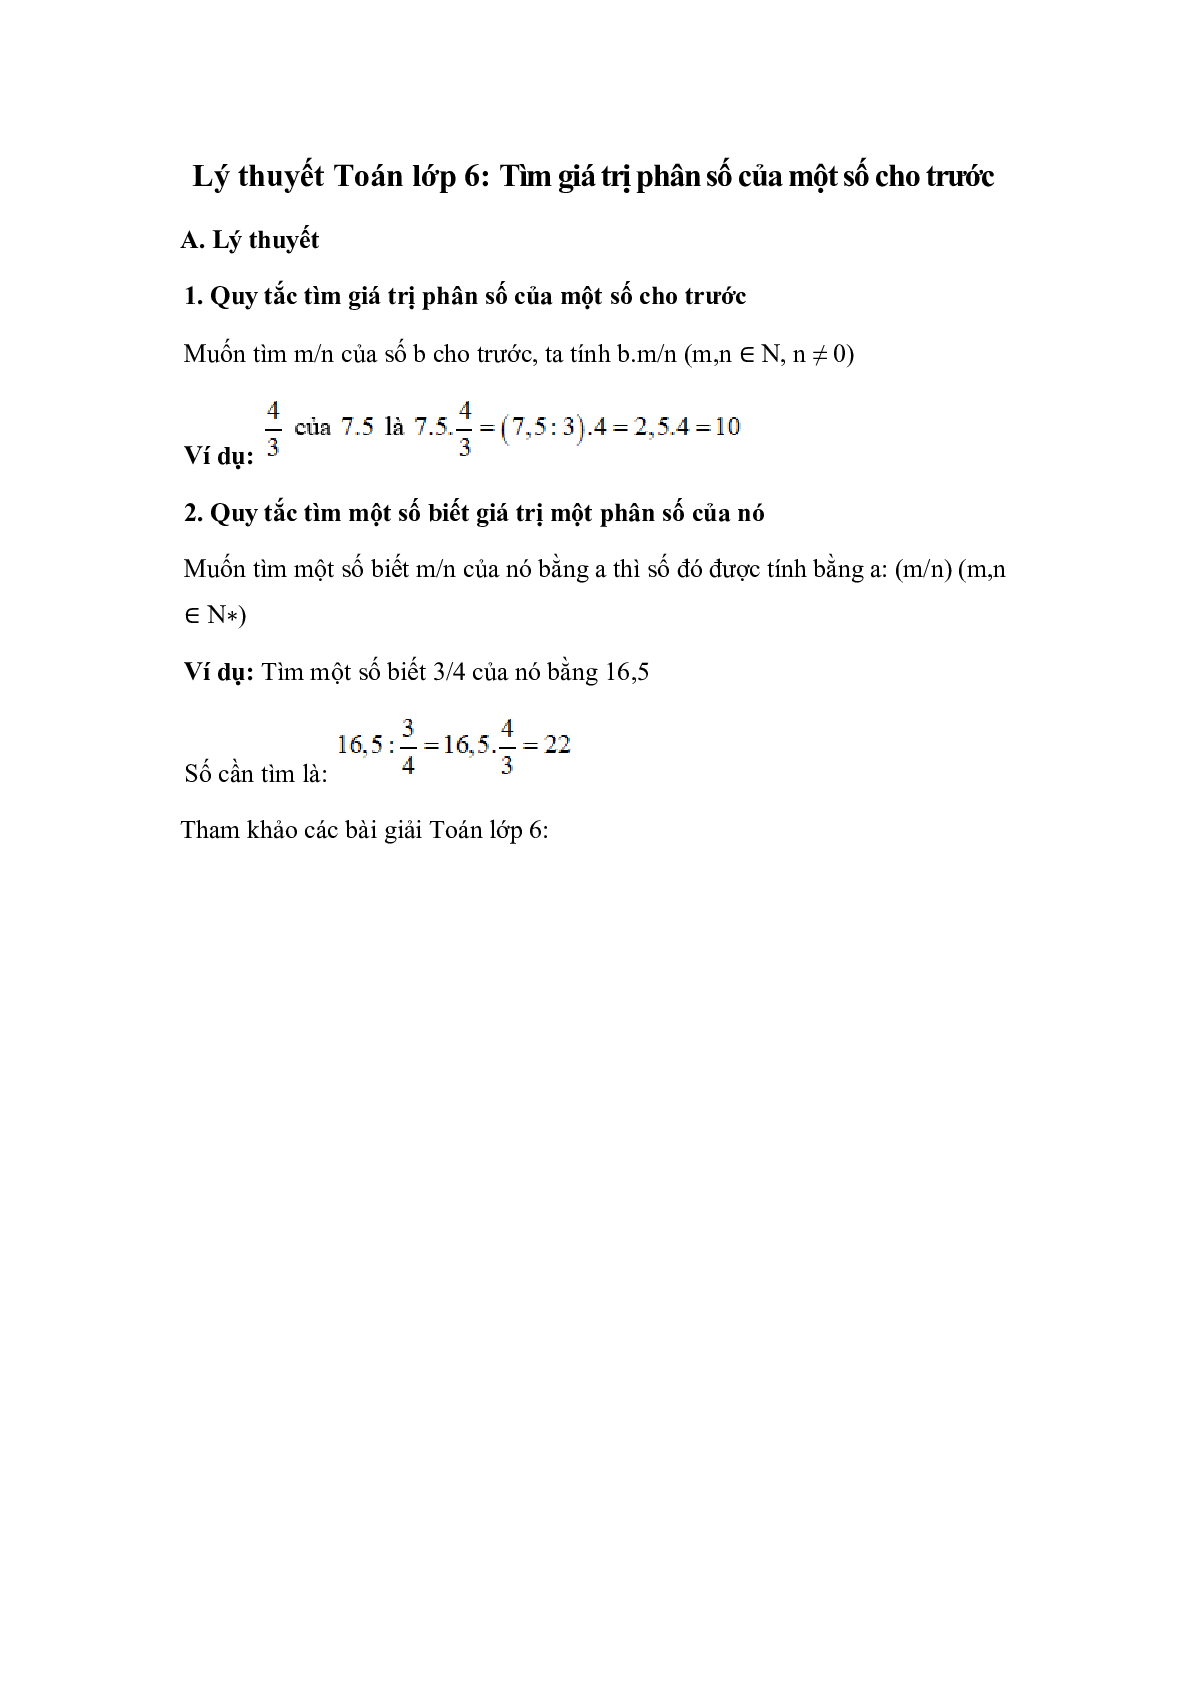 Lý thuyết Toán lớp 6: Tìm giá trị phân số của một số cho trước (trang 1)